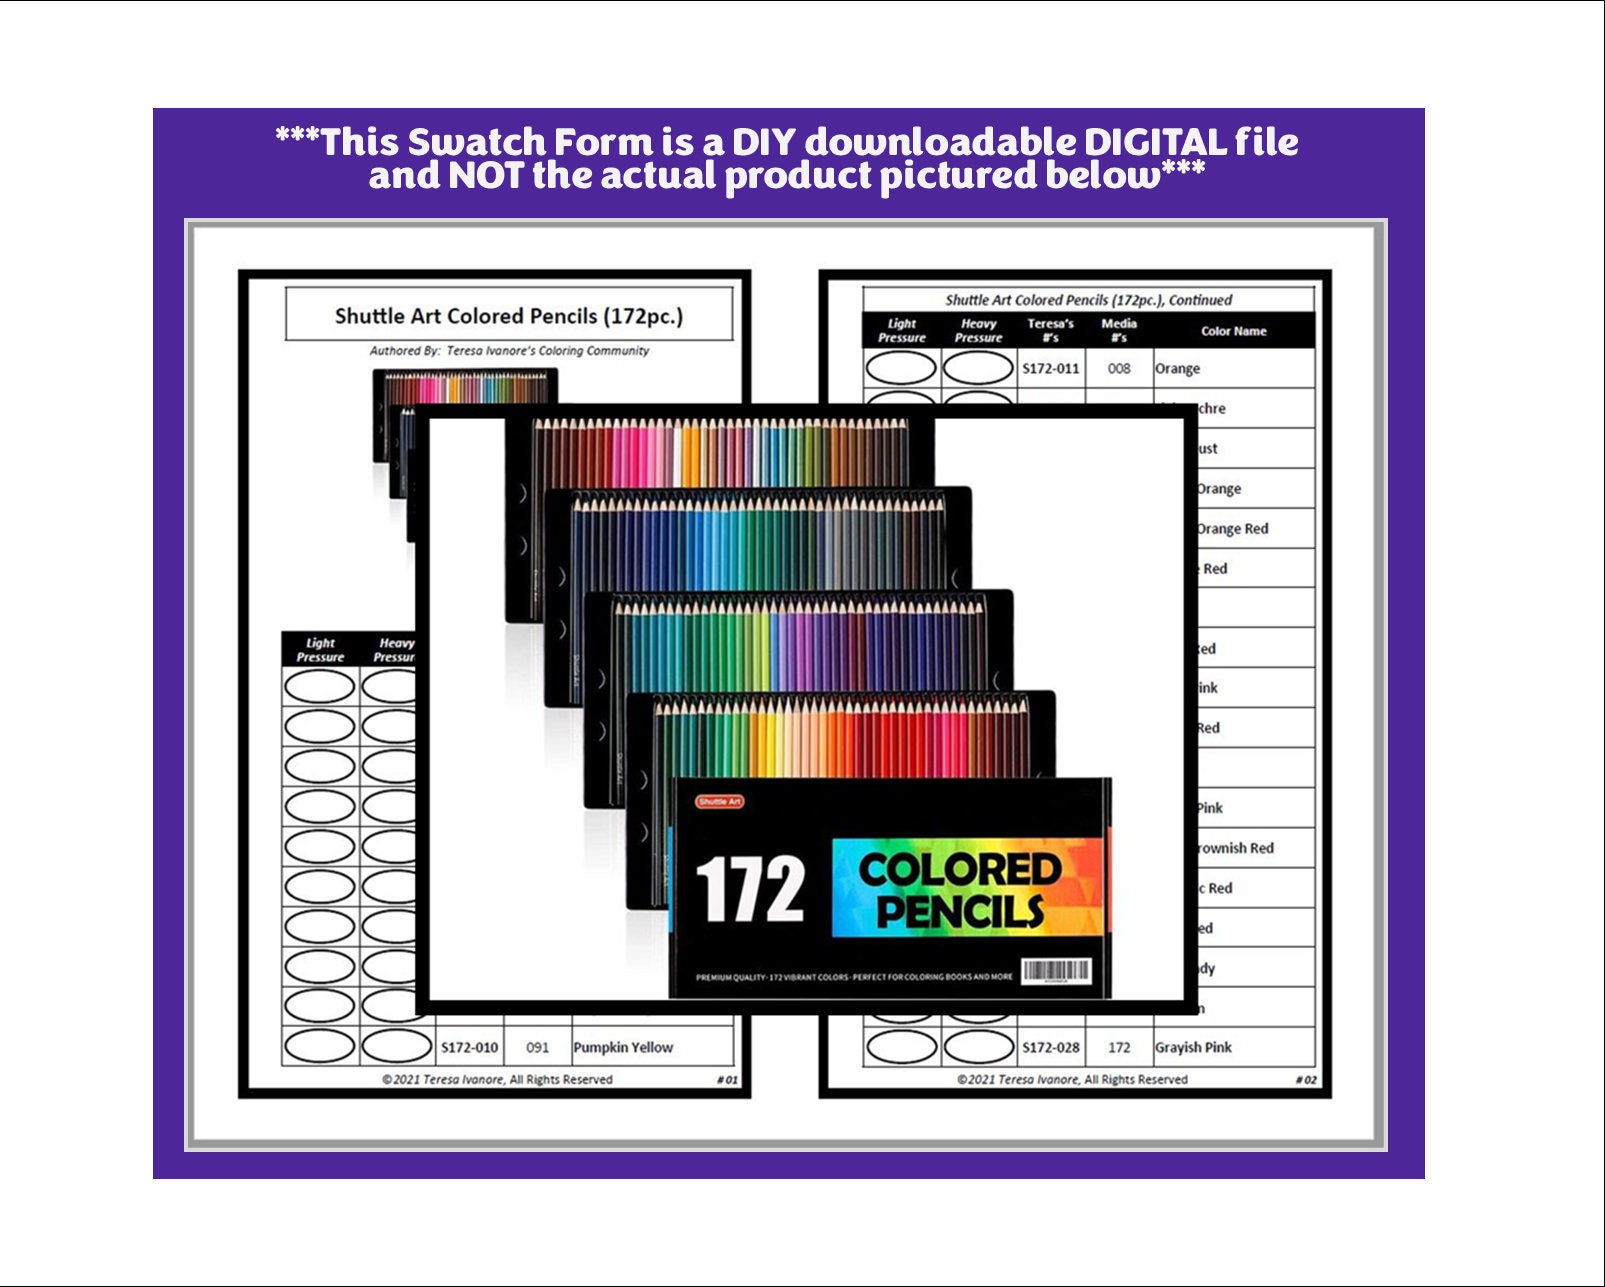 Shuttle Art 172 Colored Pencils, Soft Core Color Pencil Set for Coloring  Books